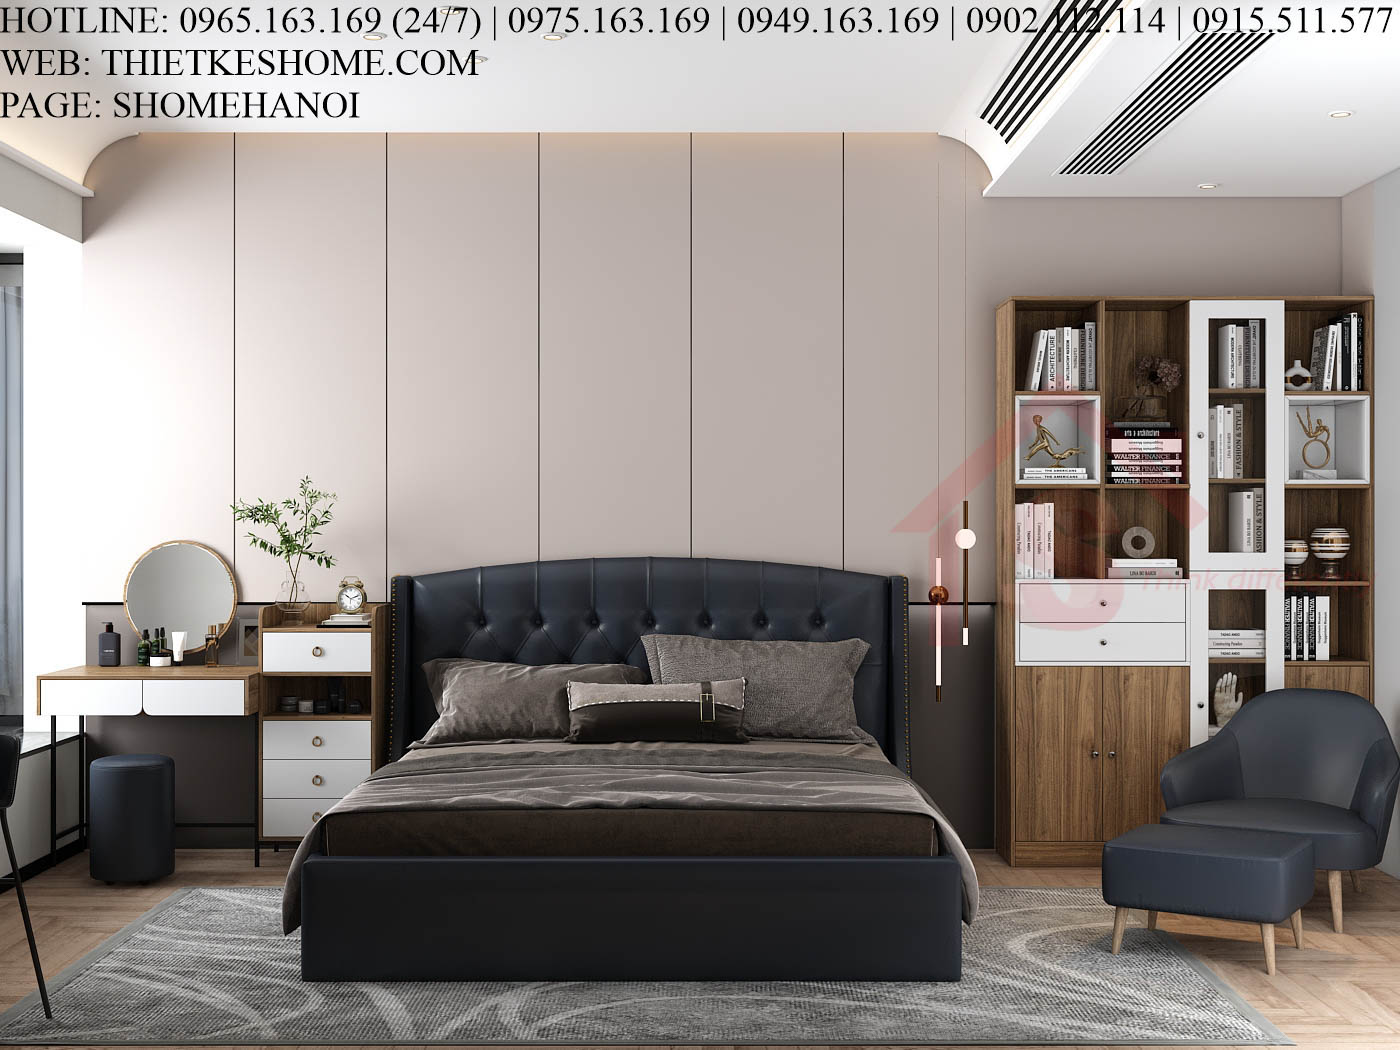 S HOME Combo mẫu nội thất phòng ngủ đẹp hiện đại tiện dụng SHOME6812